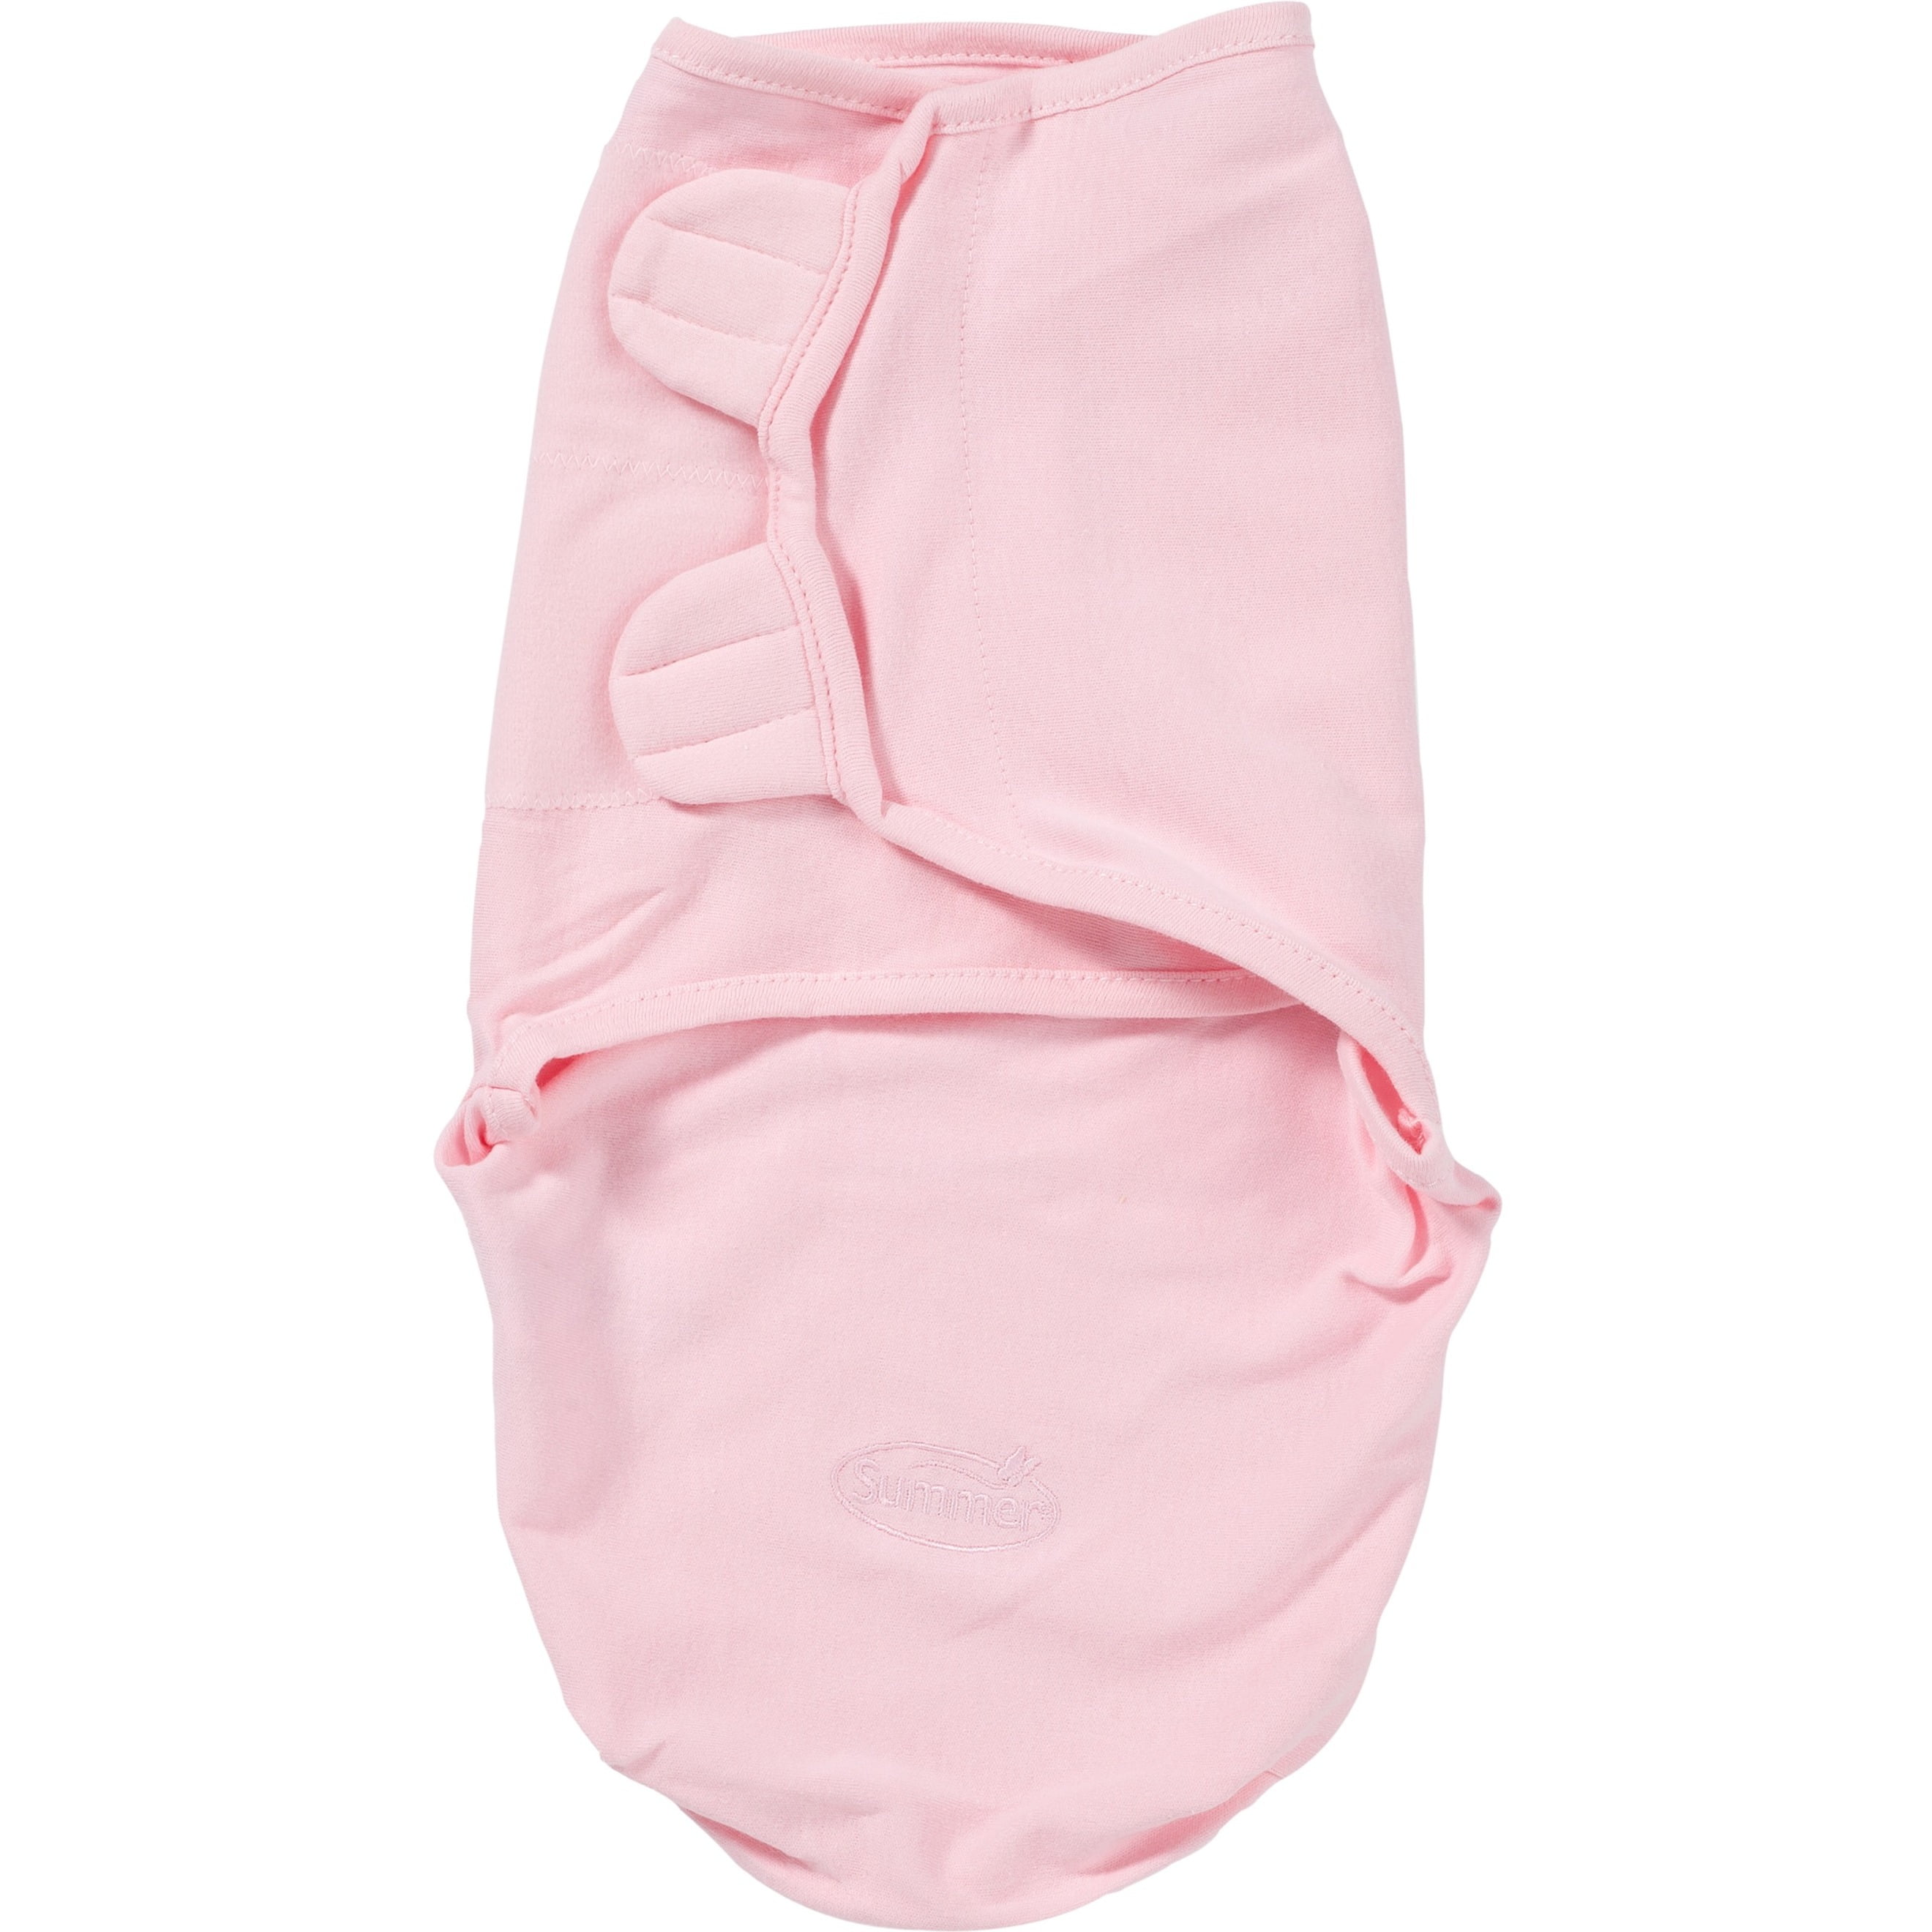 Summer Infant SwaddleMe Adjustable Baby Wrap, SM/MED Pink - Walmart.com